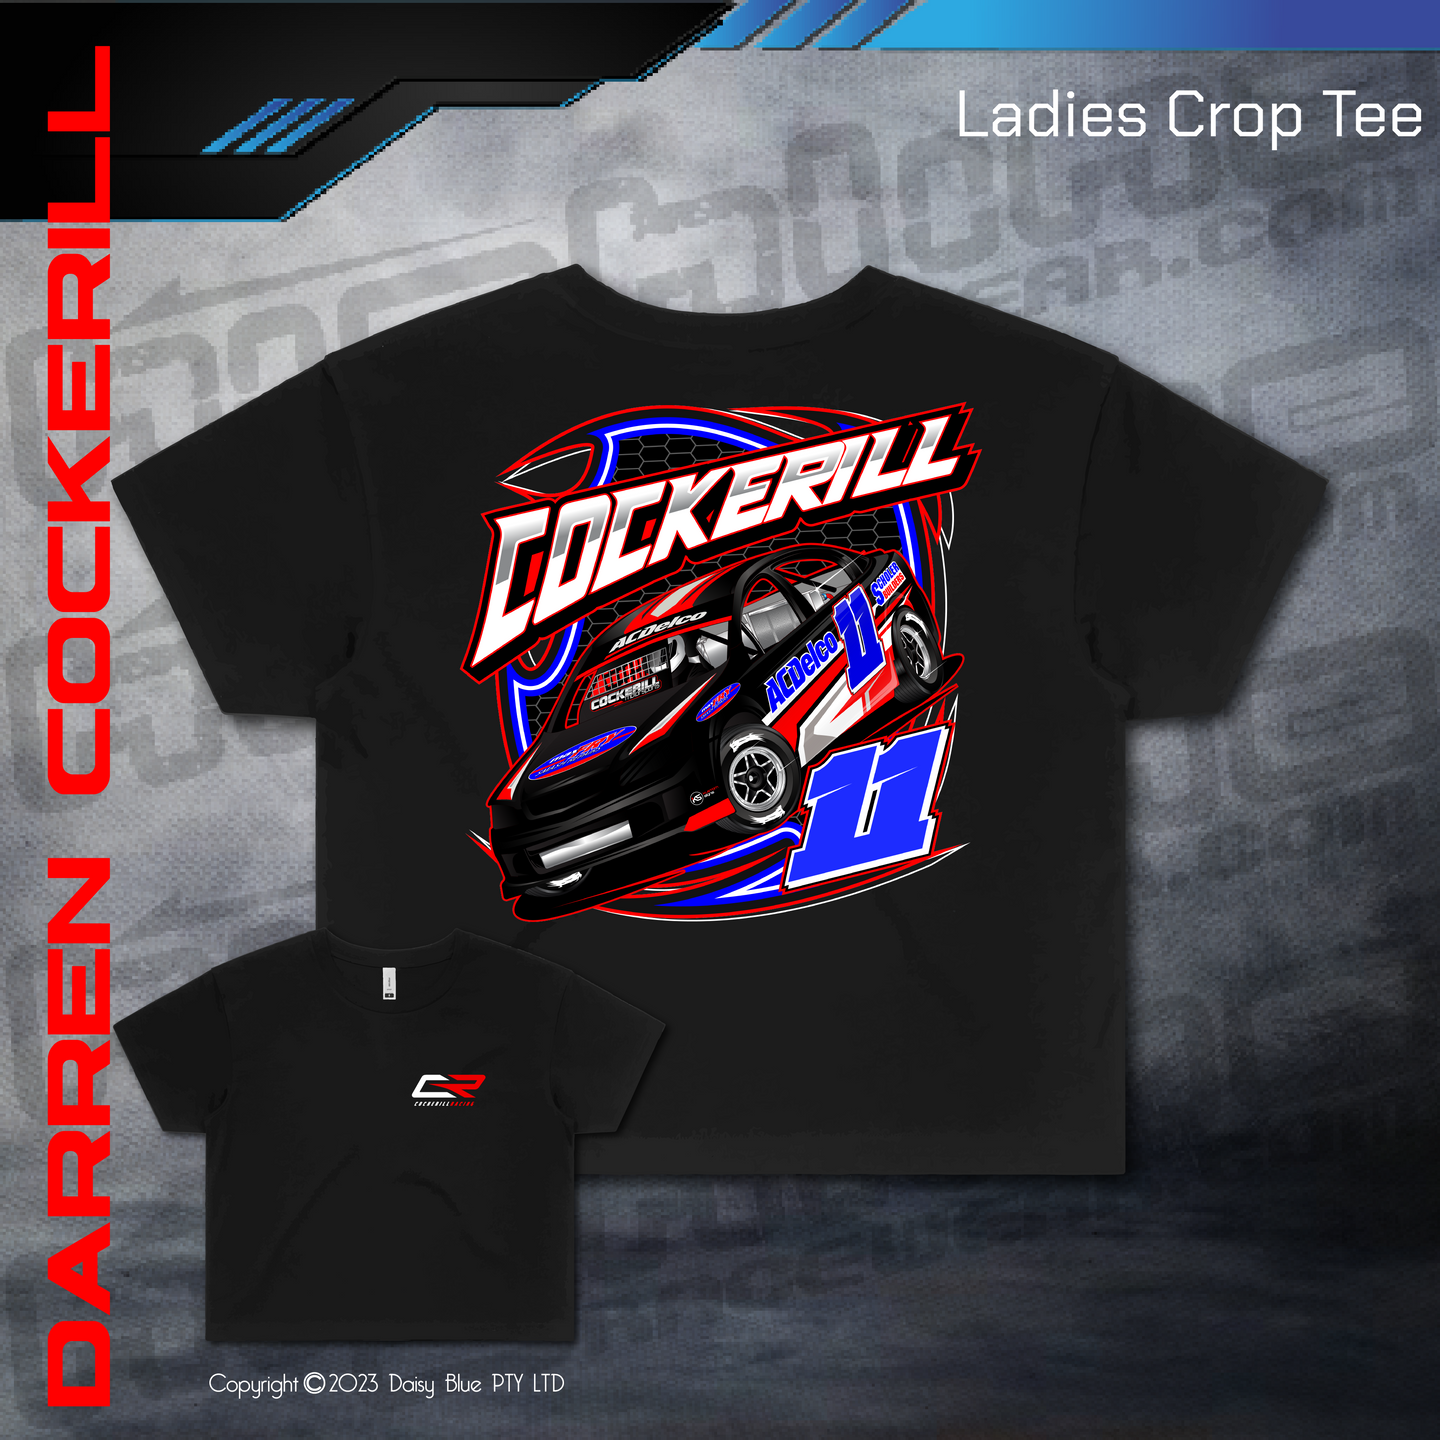 Ladies Crop Tee - Cockerill Racing